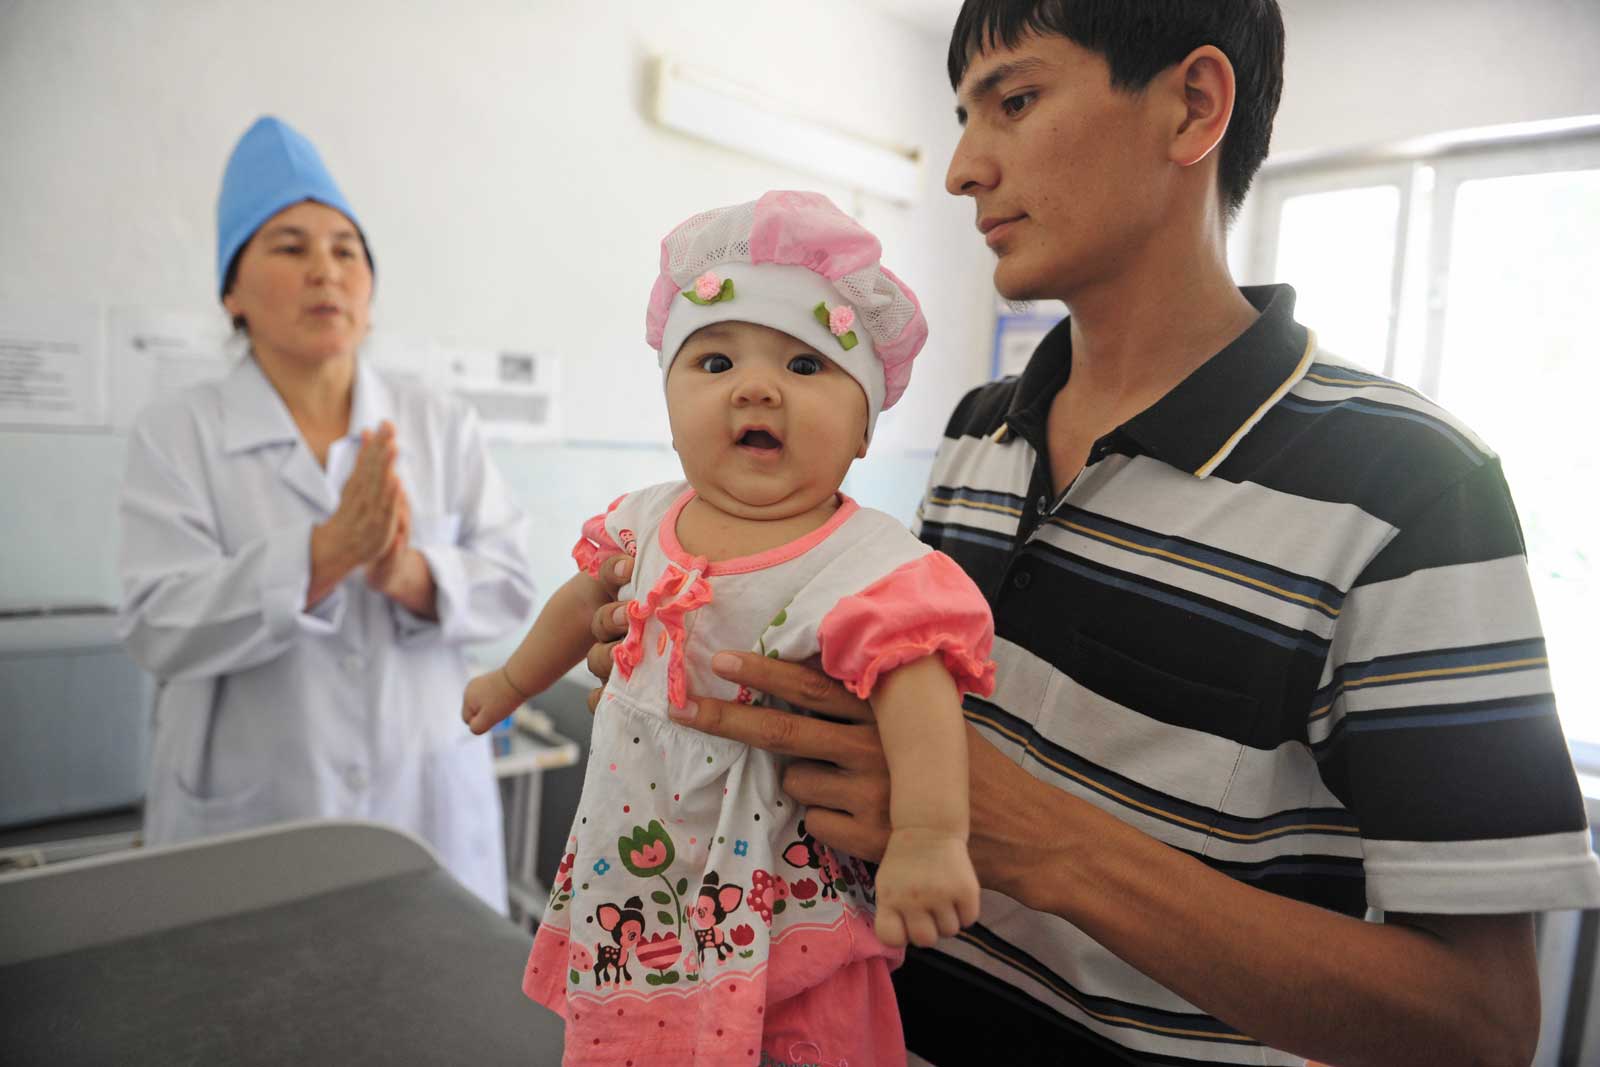   Les attitudes négatives envers la vaccination constituent un autre obstacle. Au centre de médecine familiale de Suzak, près de Jalal-Abad, Kamaldin Khurbayev refuse de faire vacciner Salikha, sa fille de trois mois, pour des motifs religieux.Plus tard, un médecin du centre parvient à le convaincre.